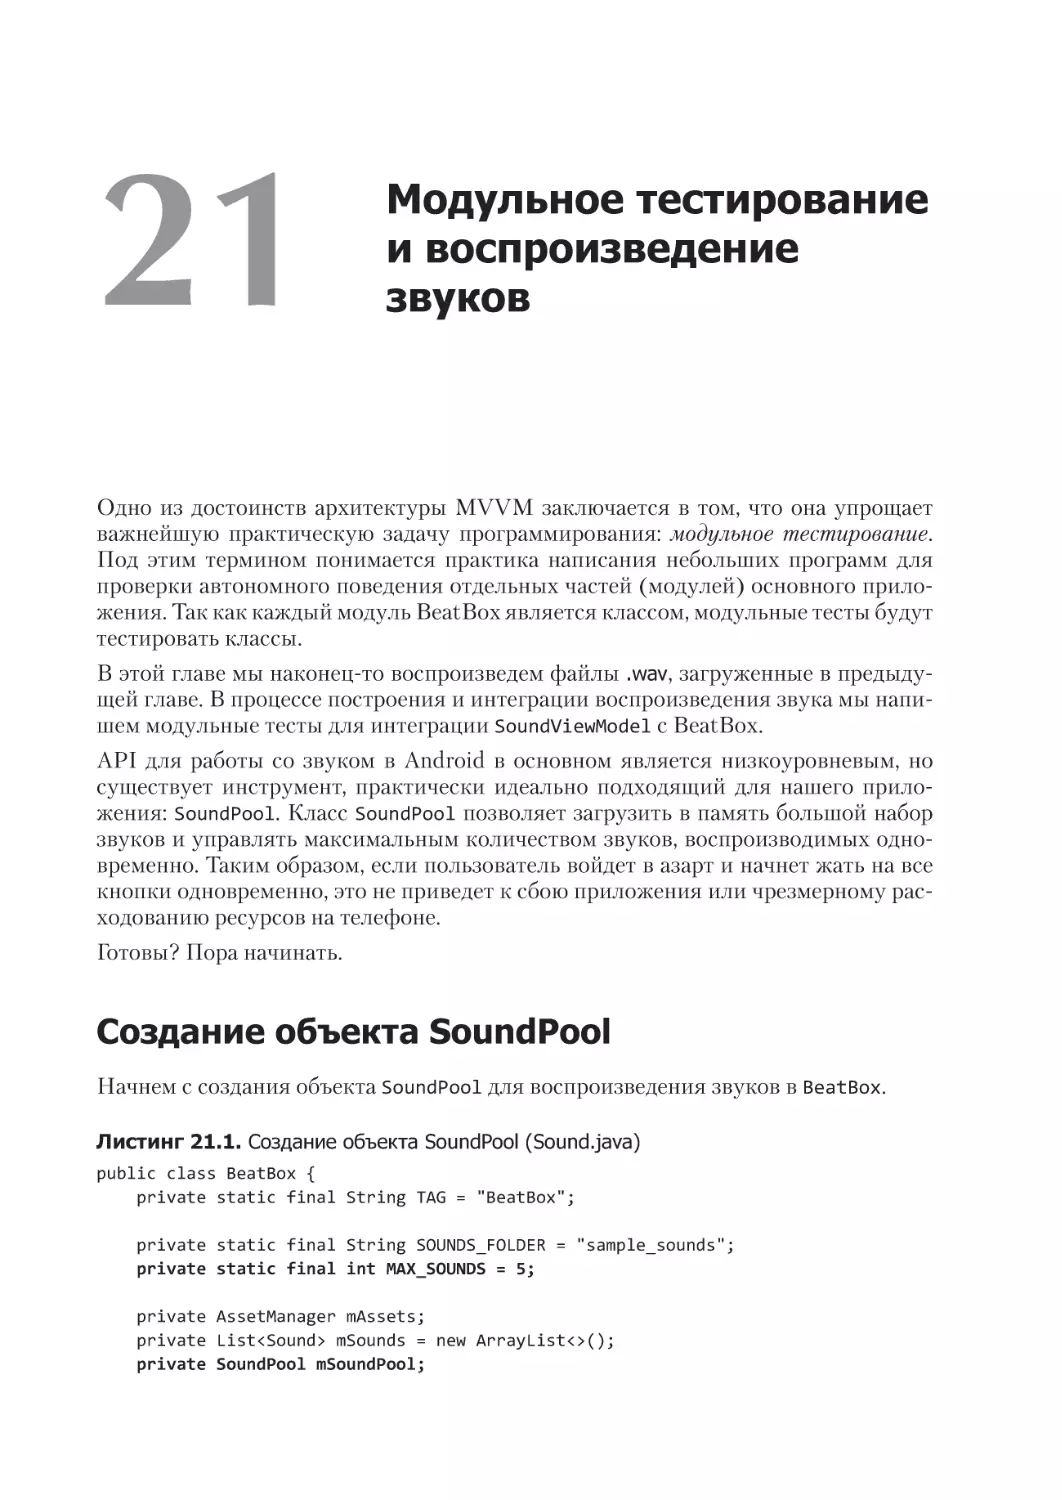 Глава 21. Модульное тестирование и воспроизведение звуков
Создание объекта SoundPool